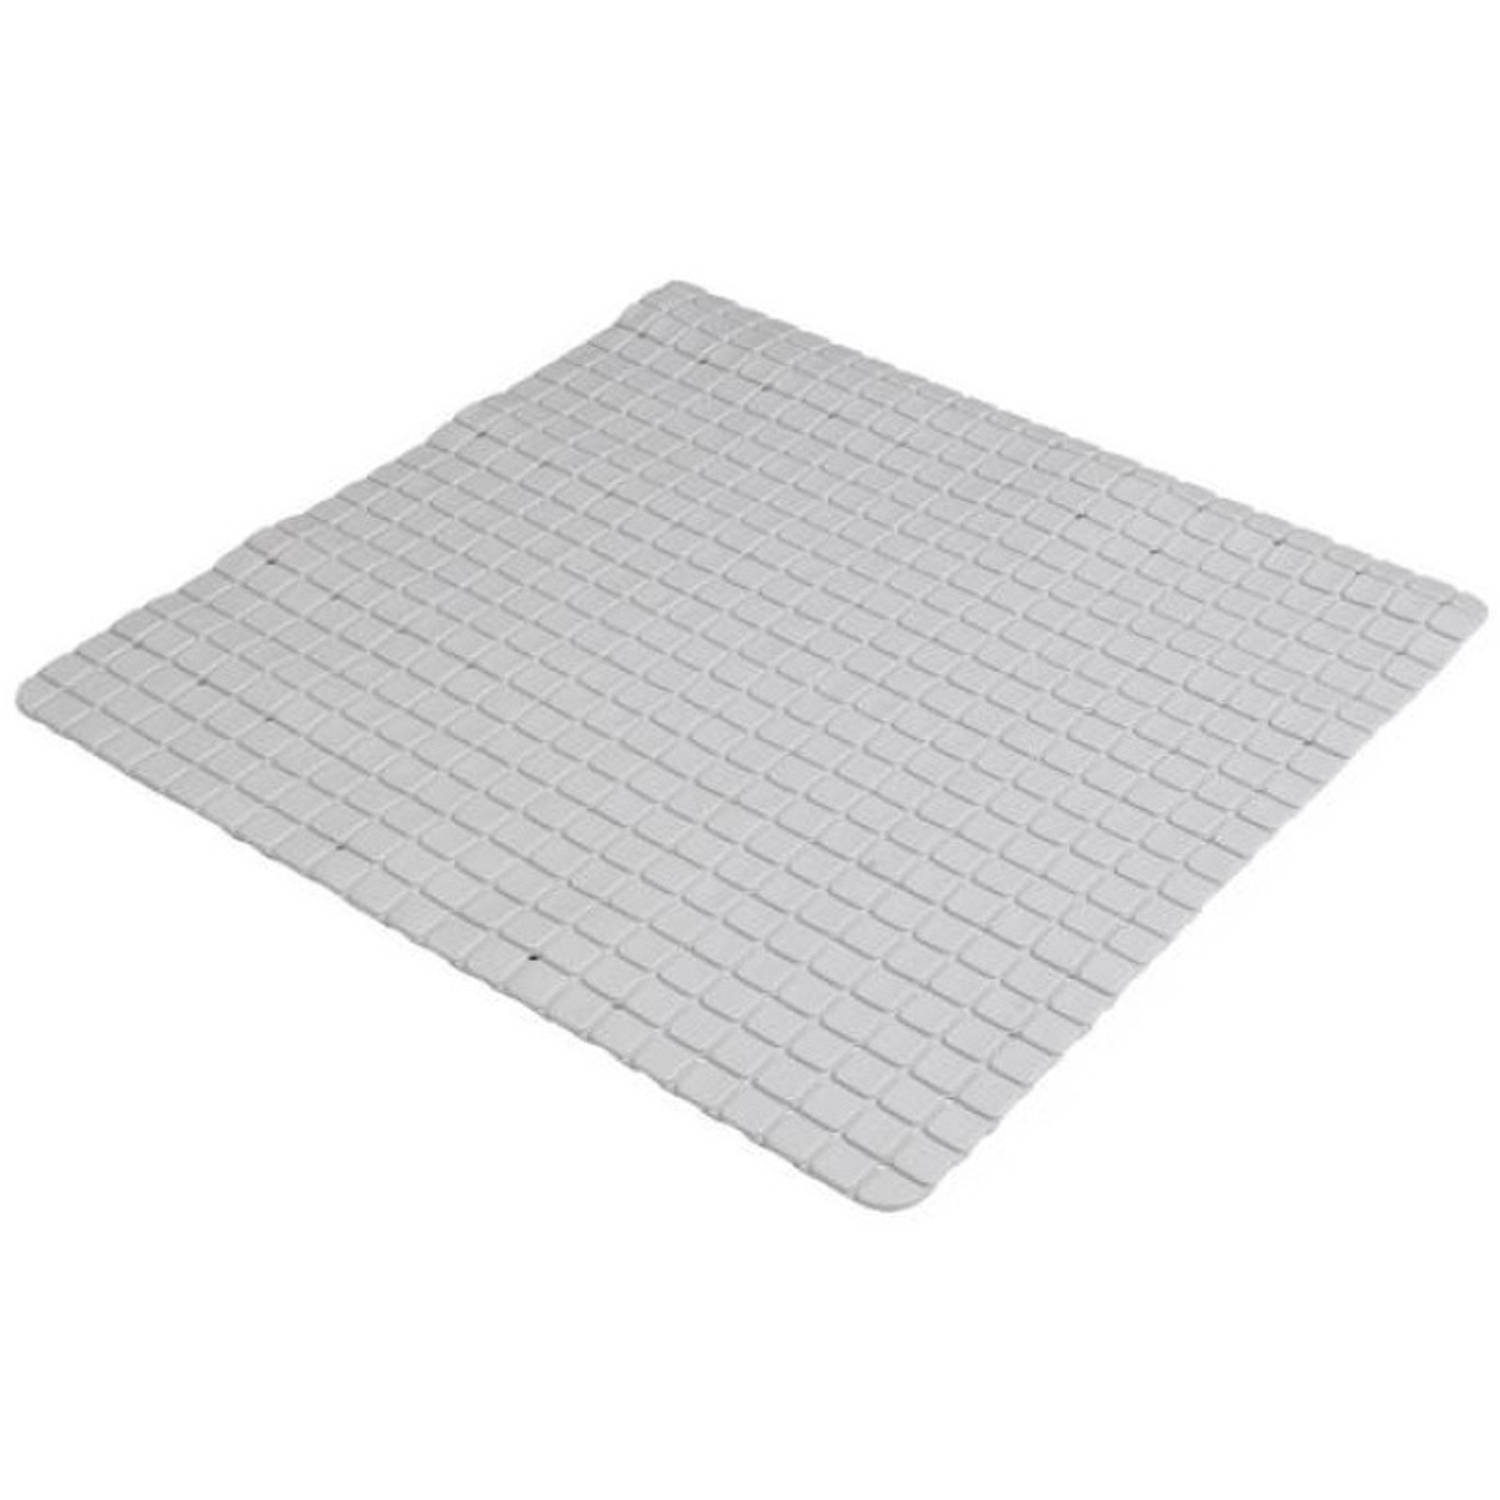 Urban Living Badkamer-douche anti slip mat rubber voor op de vloer steengrijs 55 x 55 cm Badmatjes